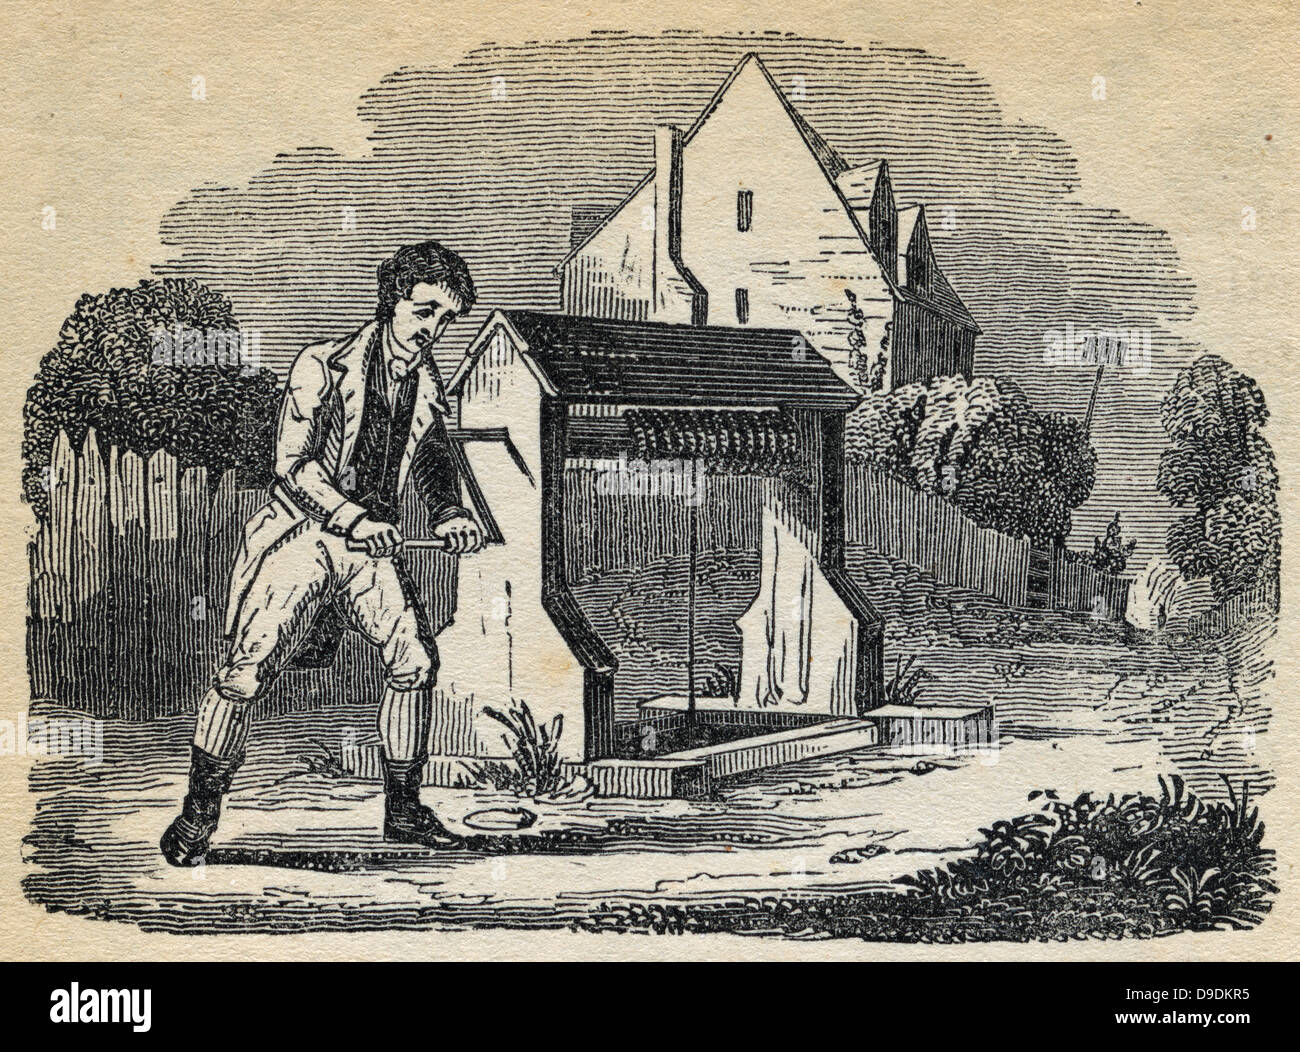 Mann Runde Erhöhung der Eimer mit Wasser aus einem Brunnen von Turing Kurbel und Wicklung Seil Winde. 1836-Gravur. Stockfoto